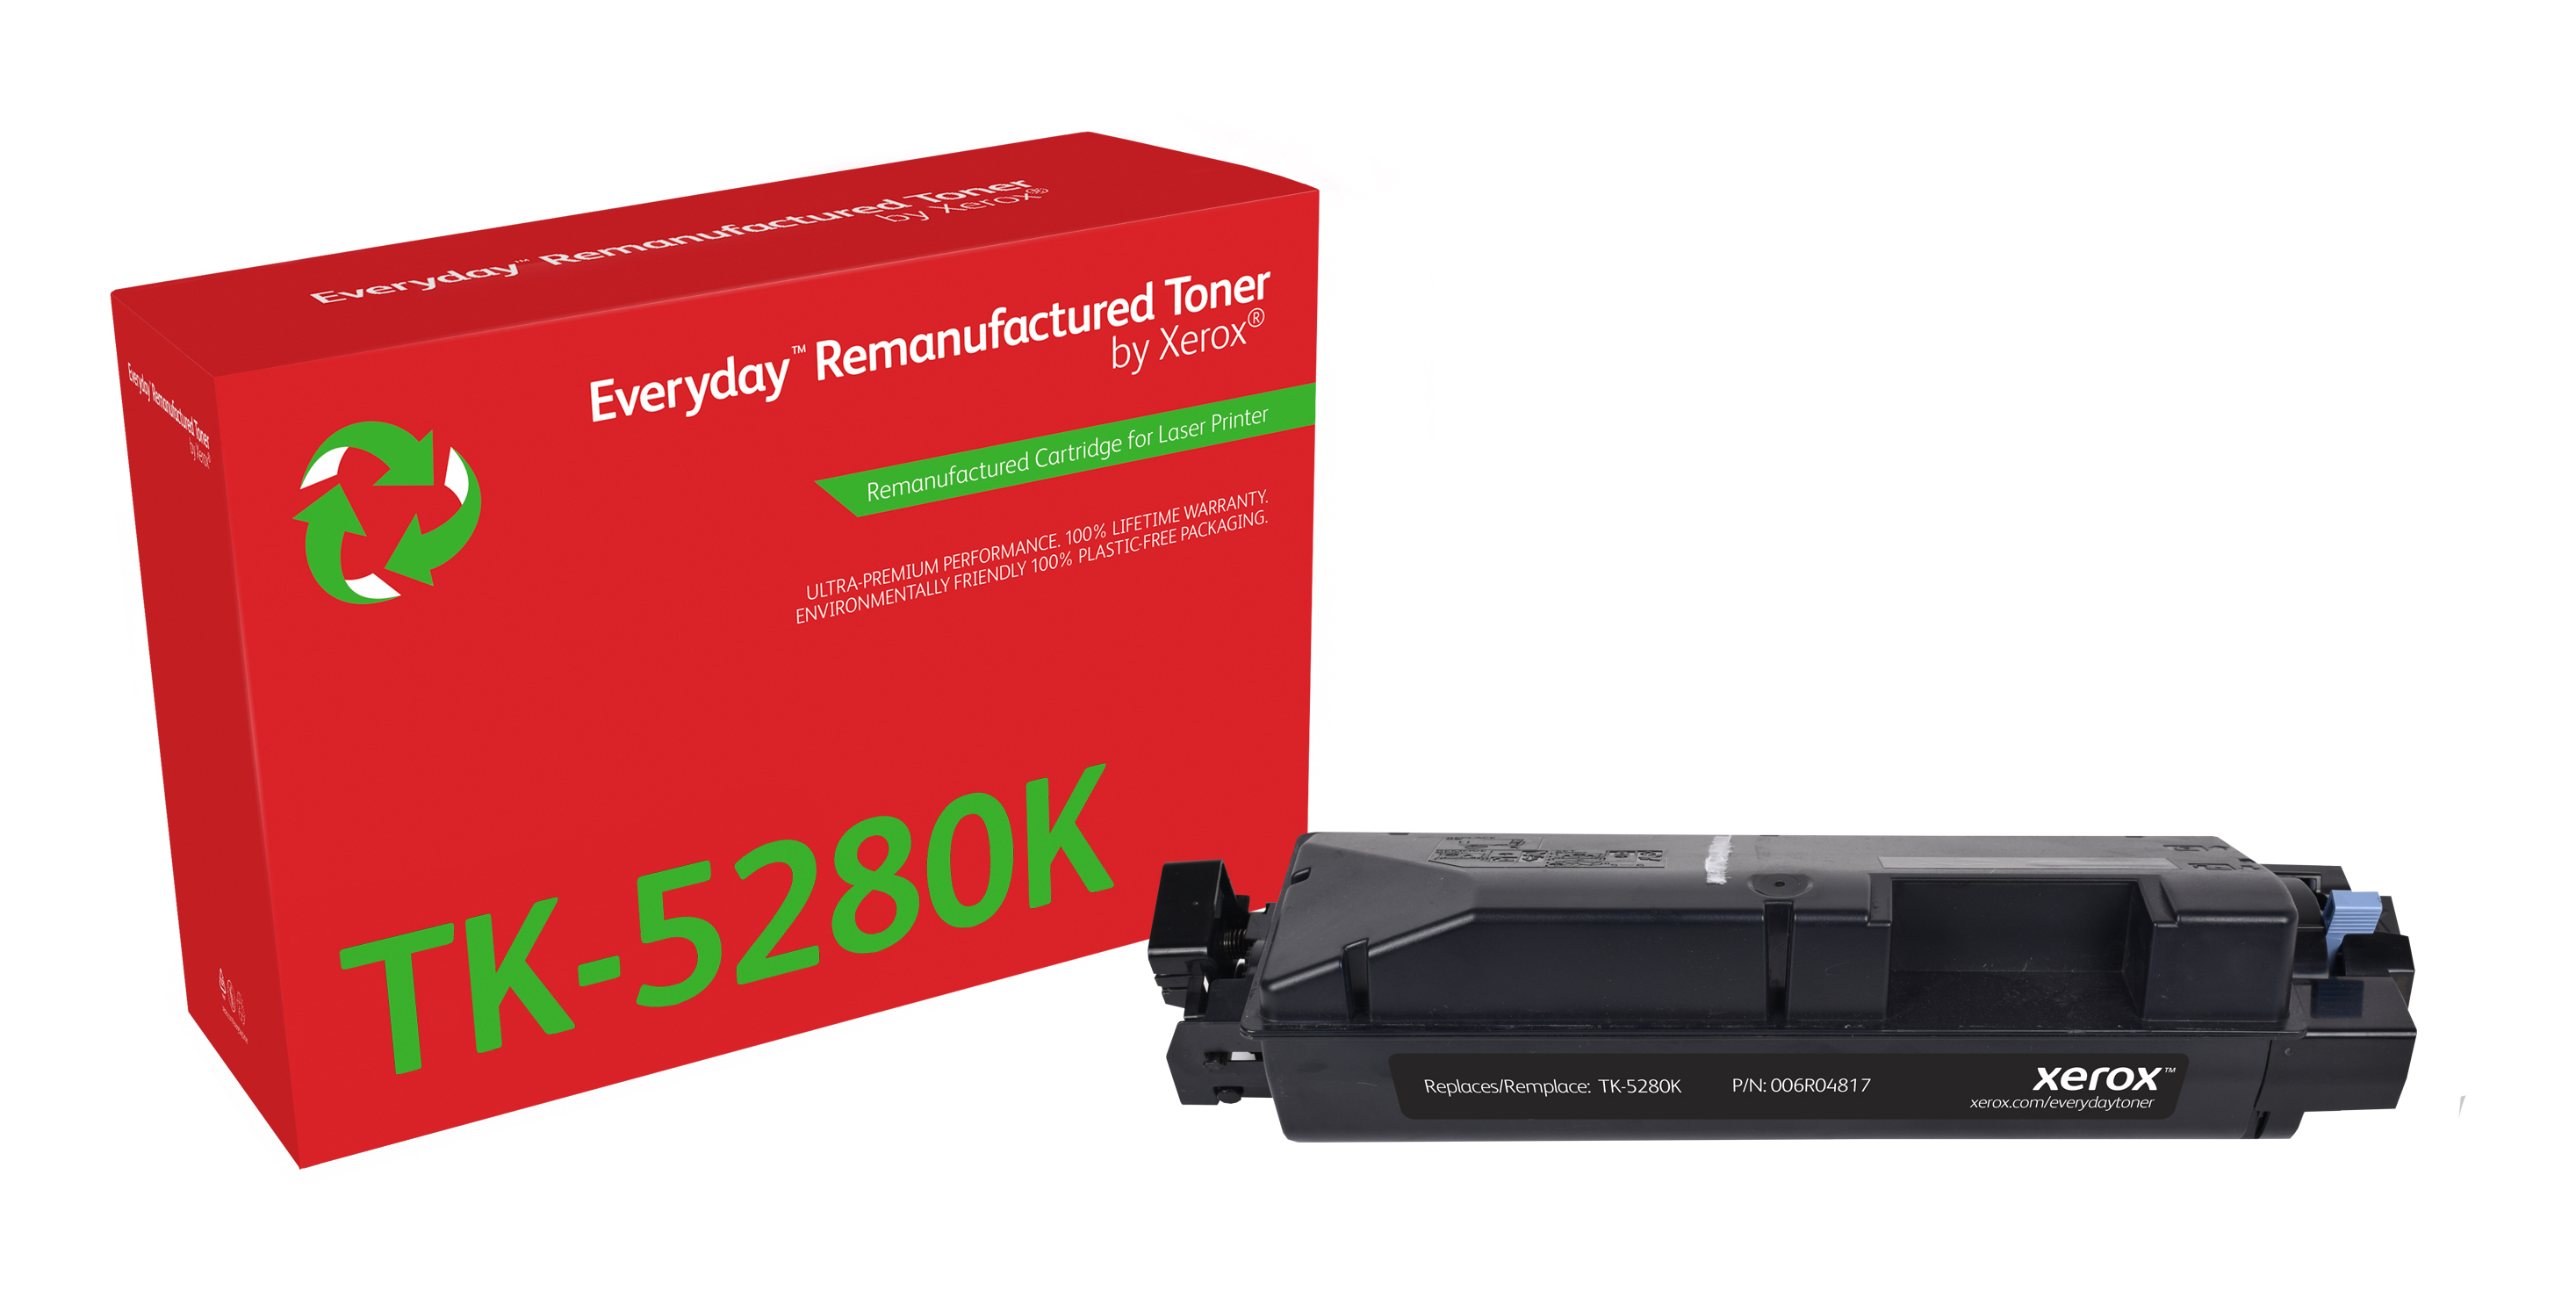 Remanufacturado Everyday Tner Everyday Negro remanufacturado de Xerox es compatible con Kyocera TK-5280K, Capacidad estndar